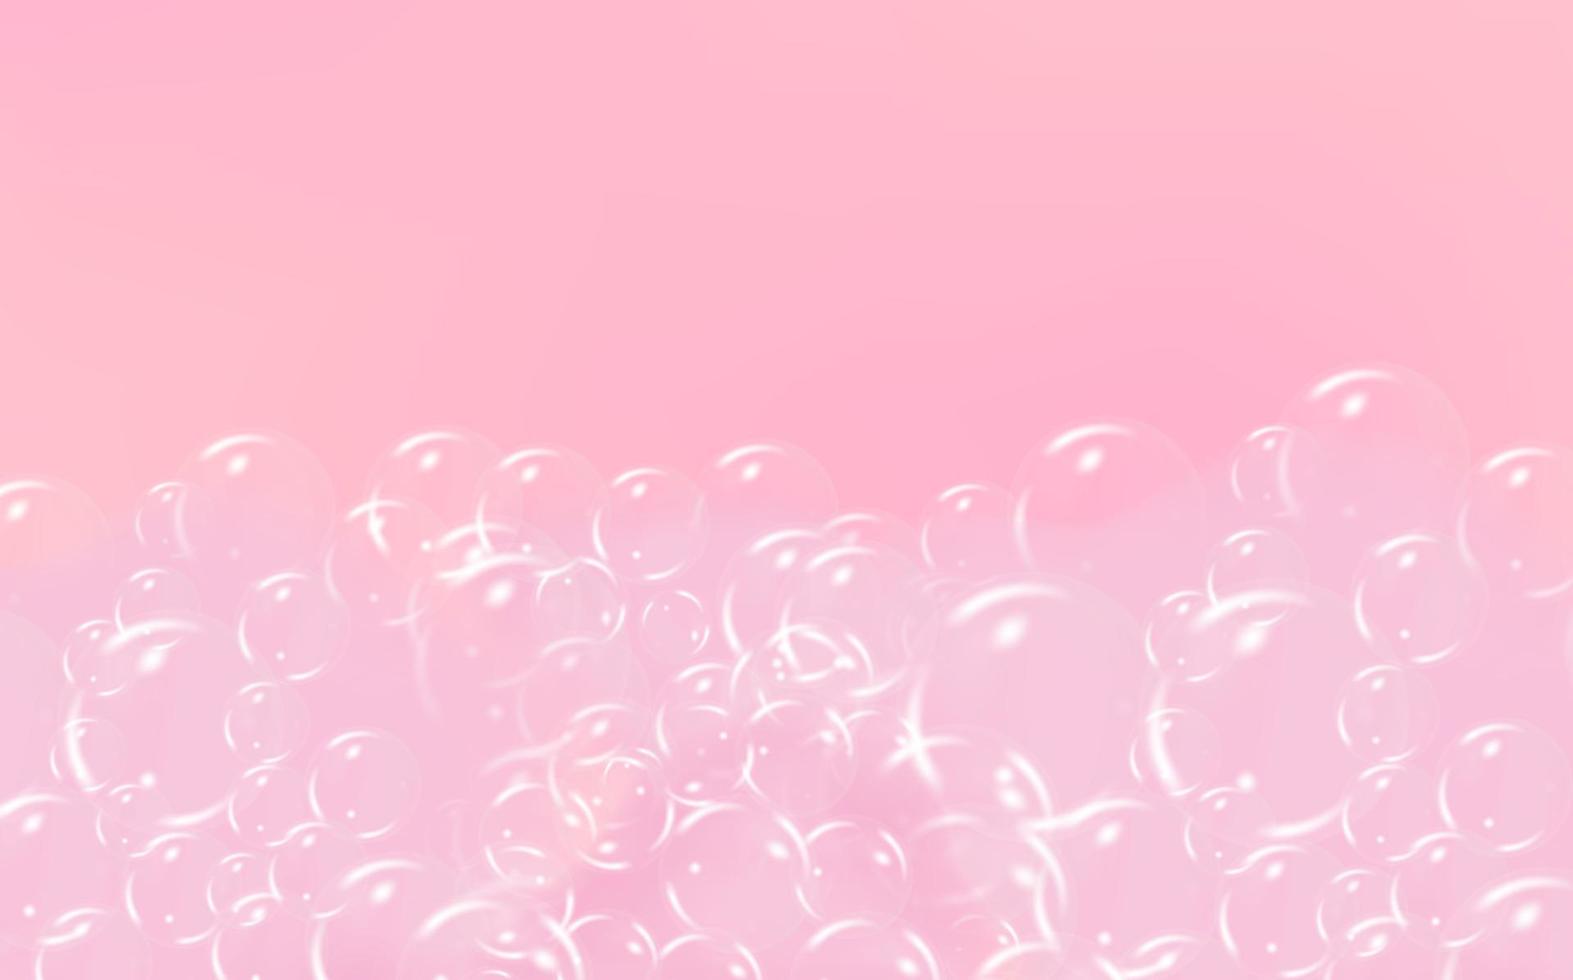 sfondo di bagno rosa schiuma isolato su trasparente sfondo. shampoo bolle trama.frizzante shampoo e bagno schiuma, vettore illustrazione.